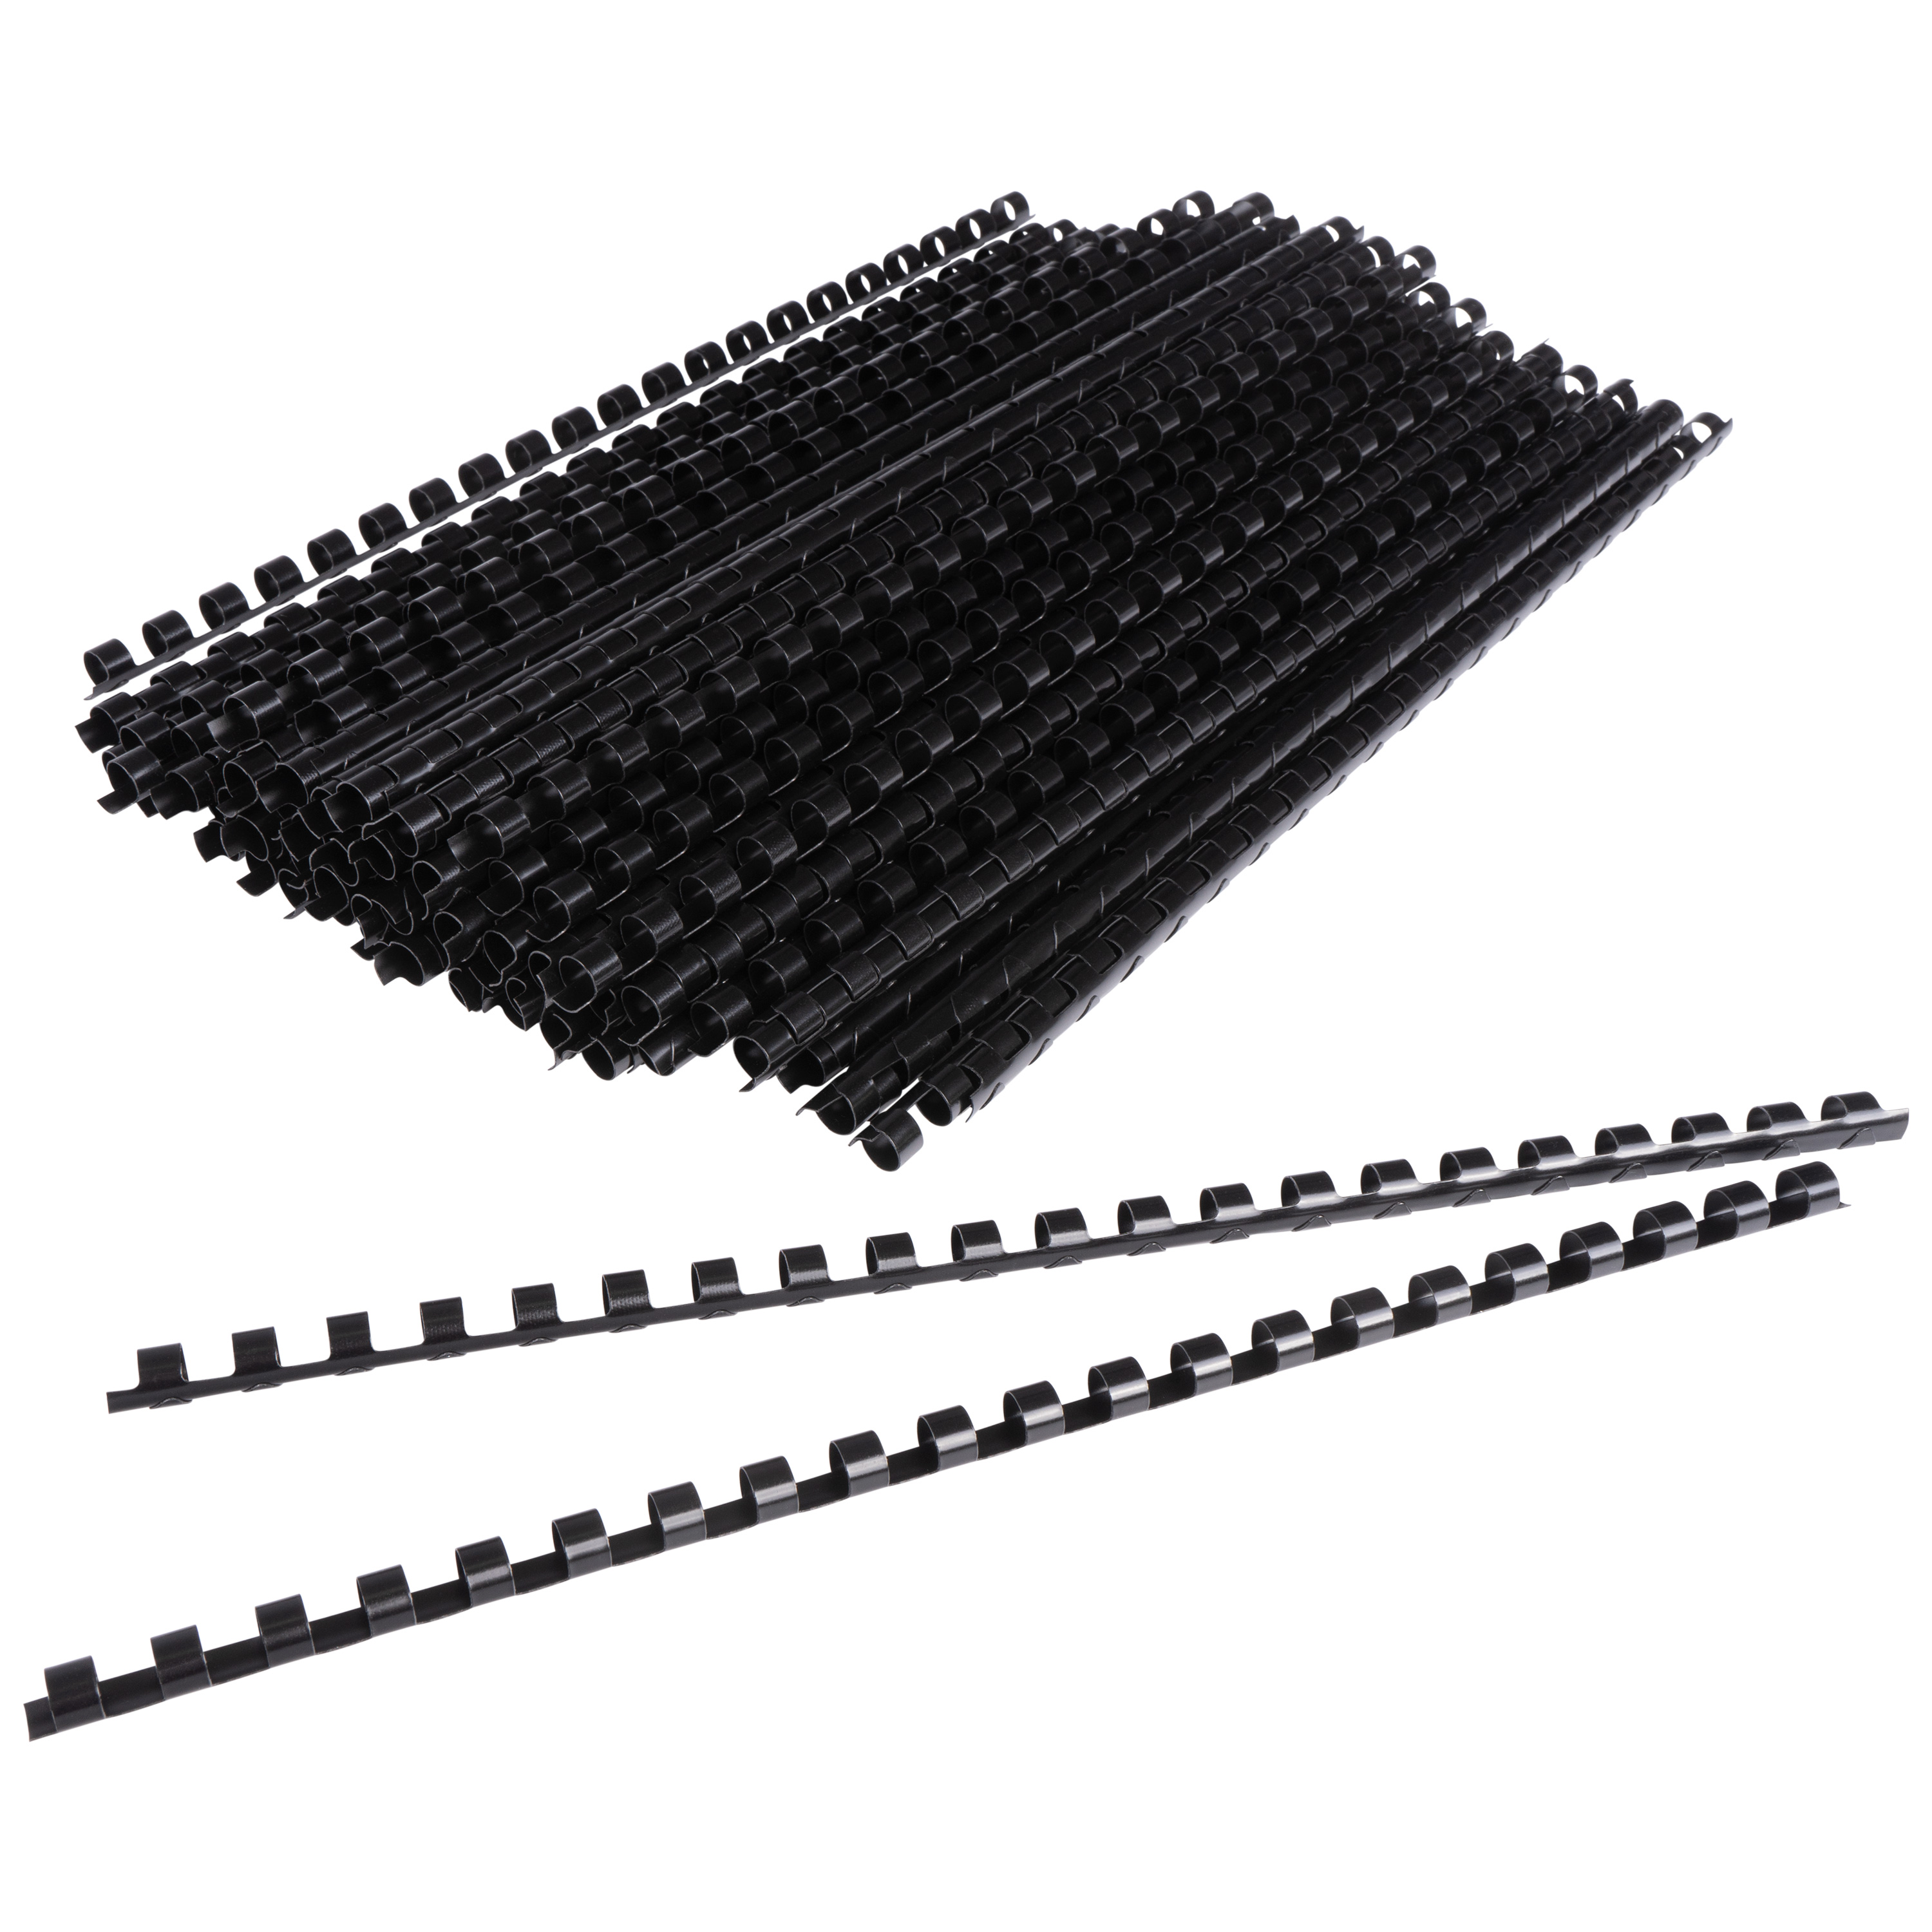 Plastikbinderücken, schwarz, 8 mm für bis zu 45 Blatt